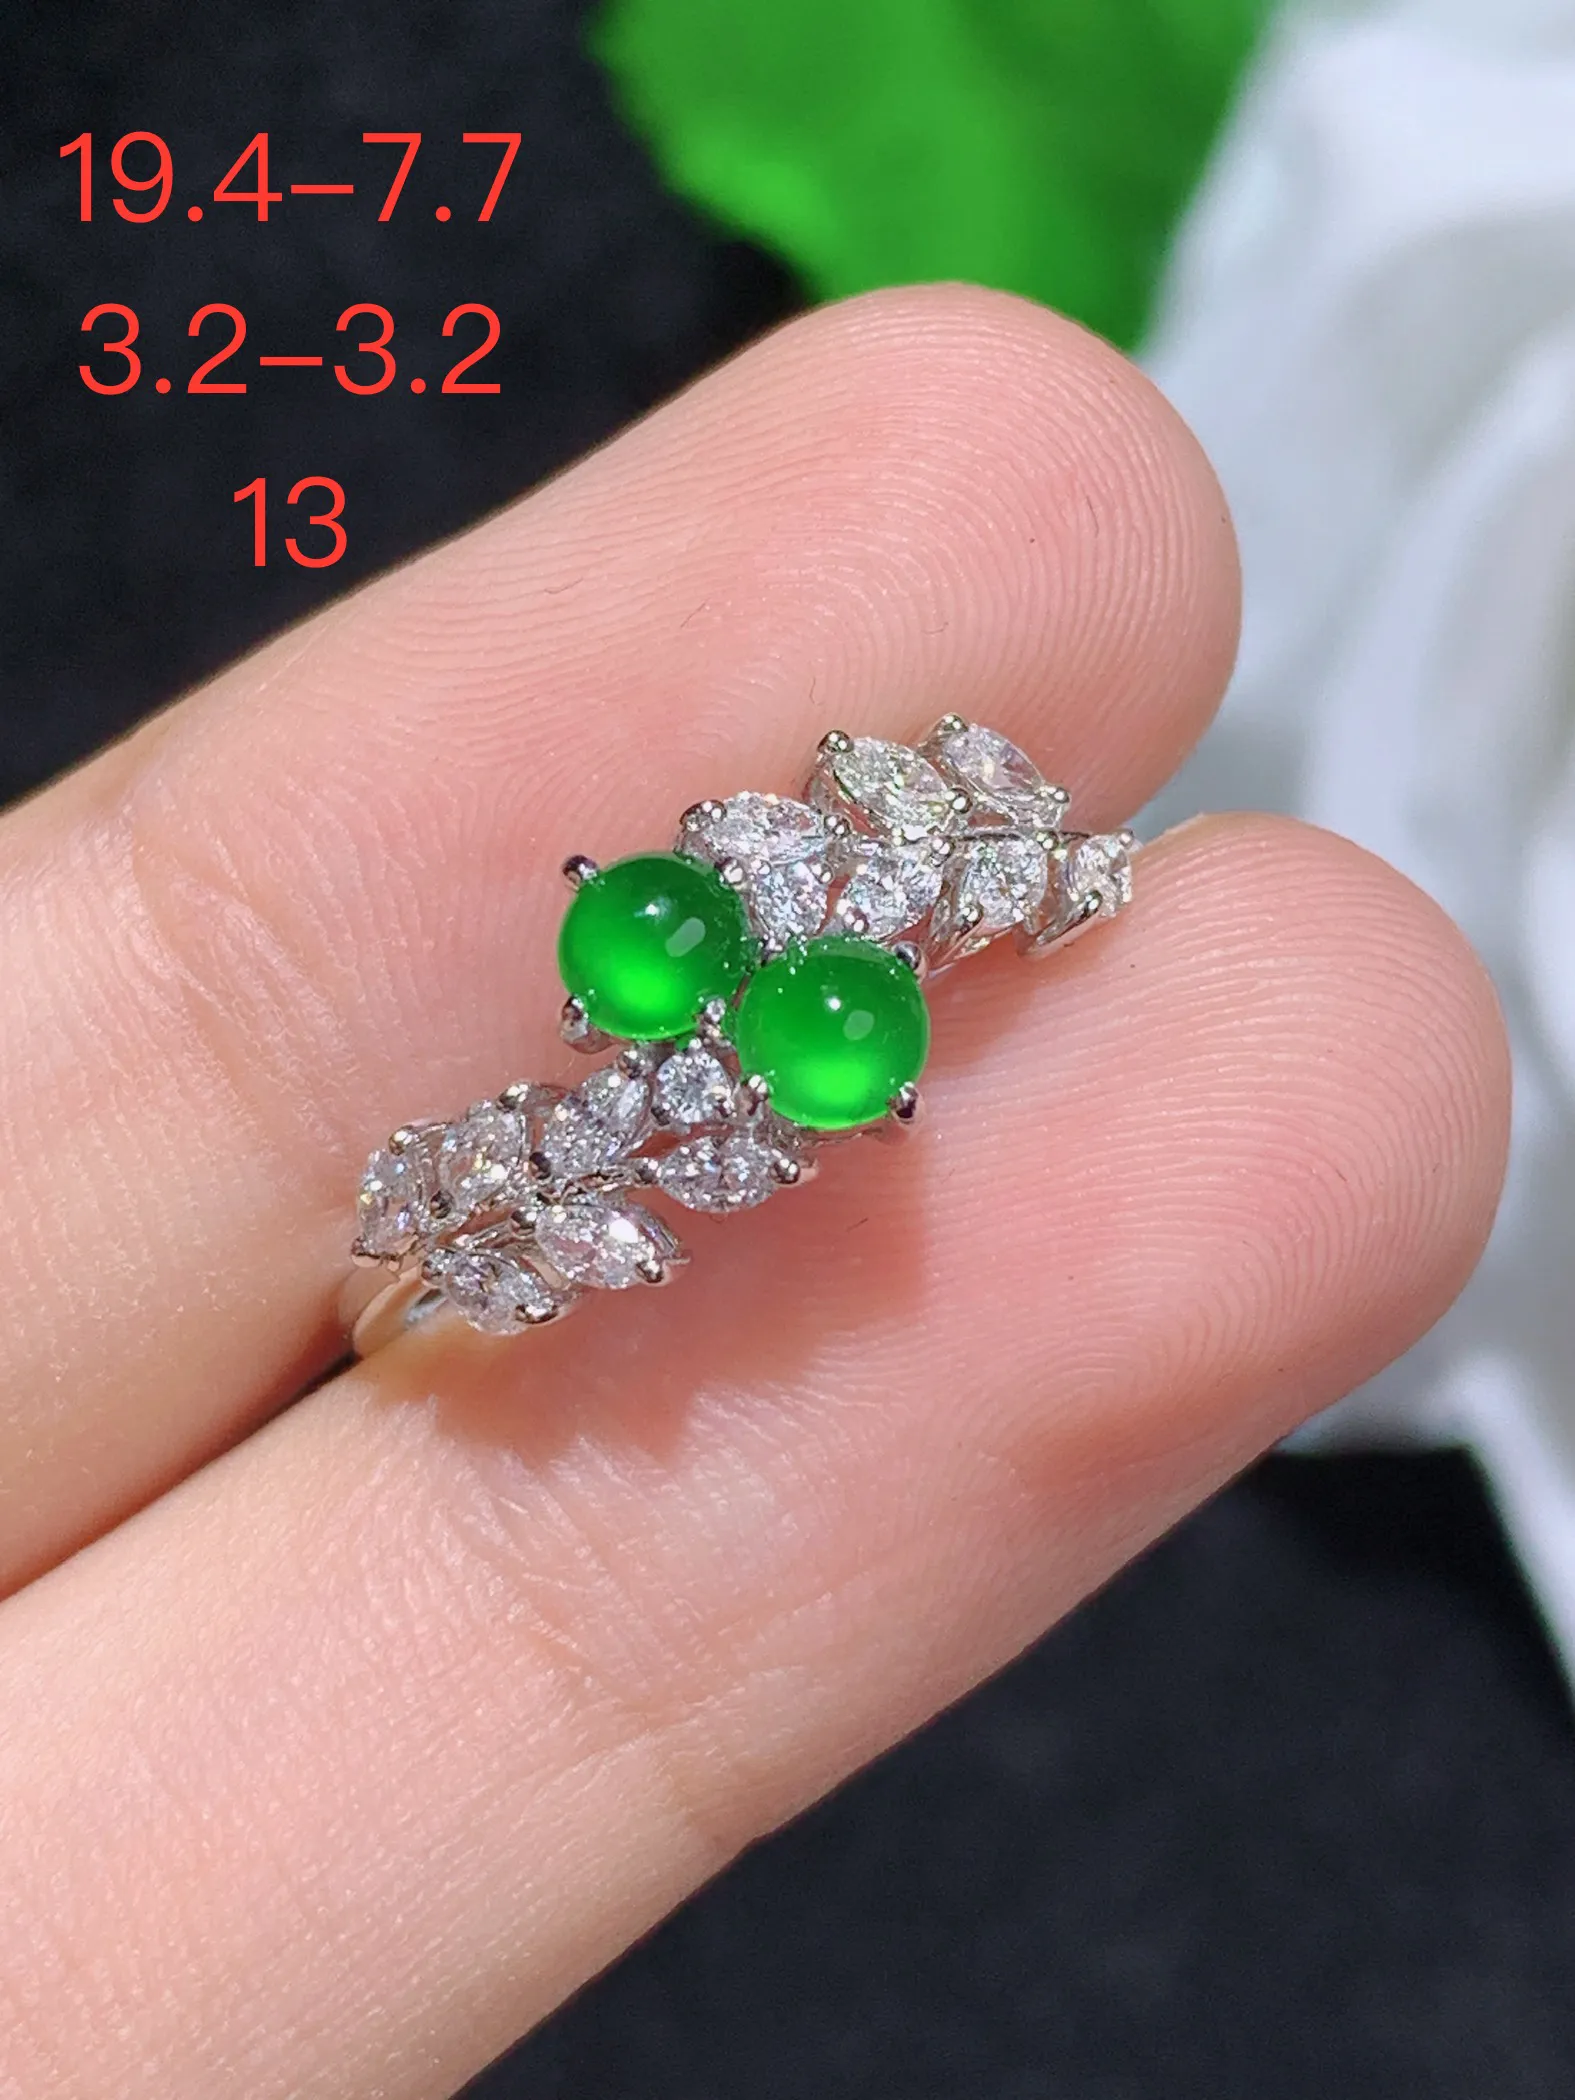 满绿蛋面戒指，18k金镶嵌，颜色清爽，水润，整体规格：19.4-7.7